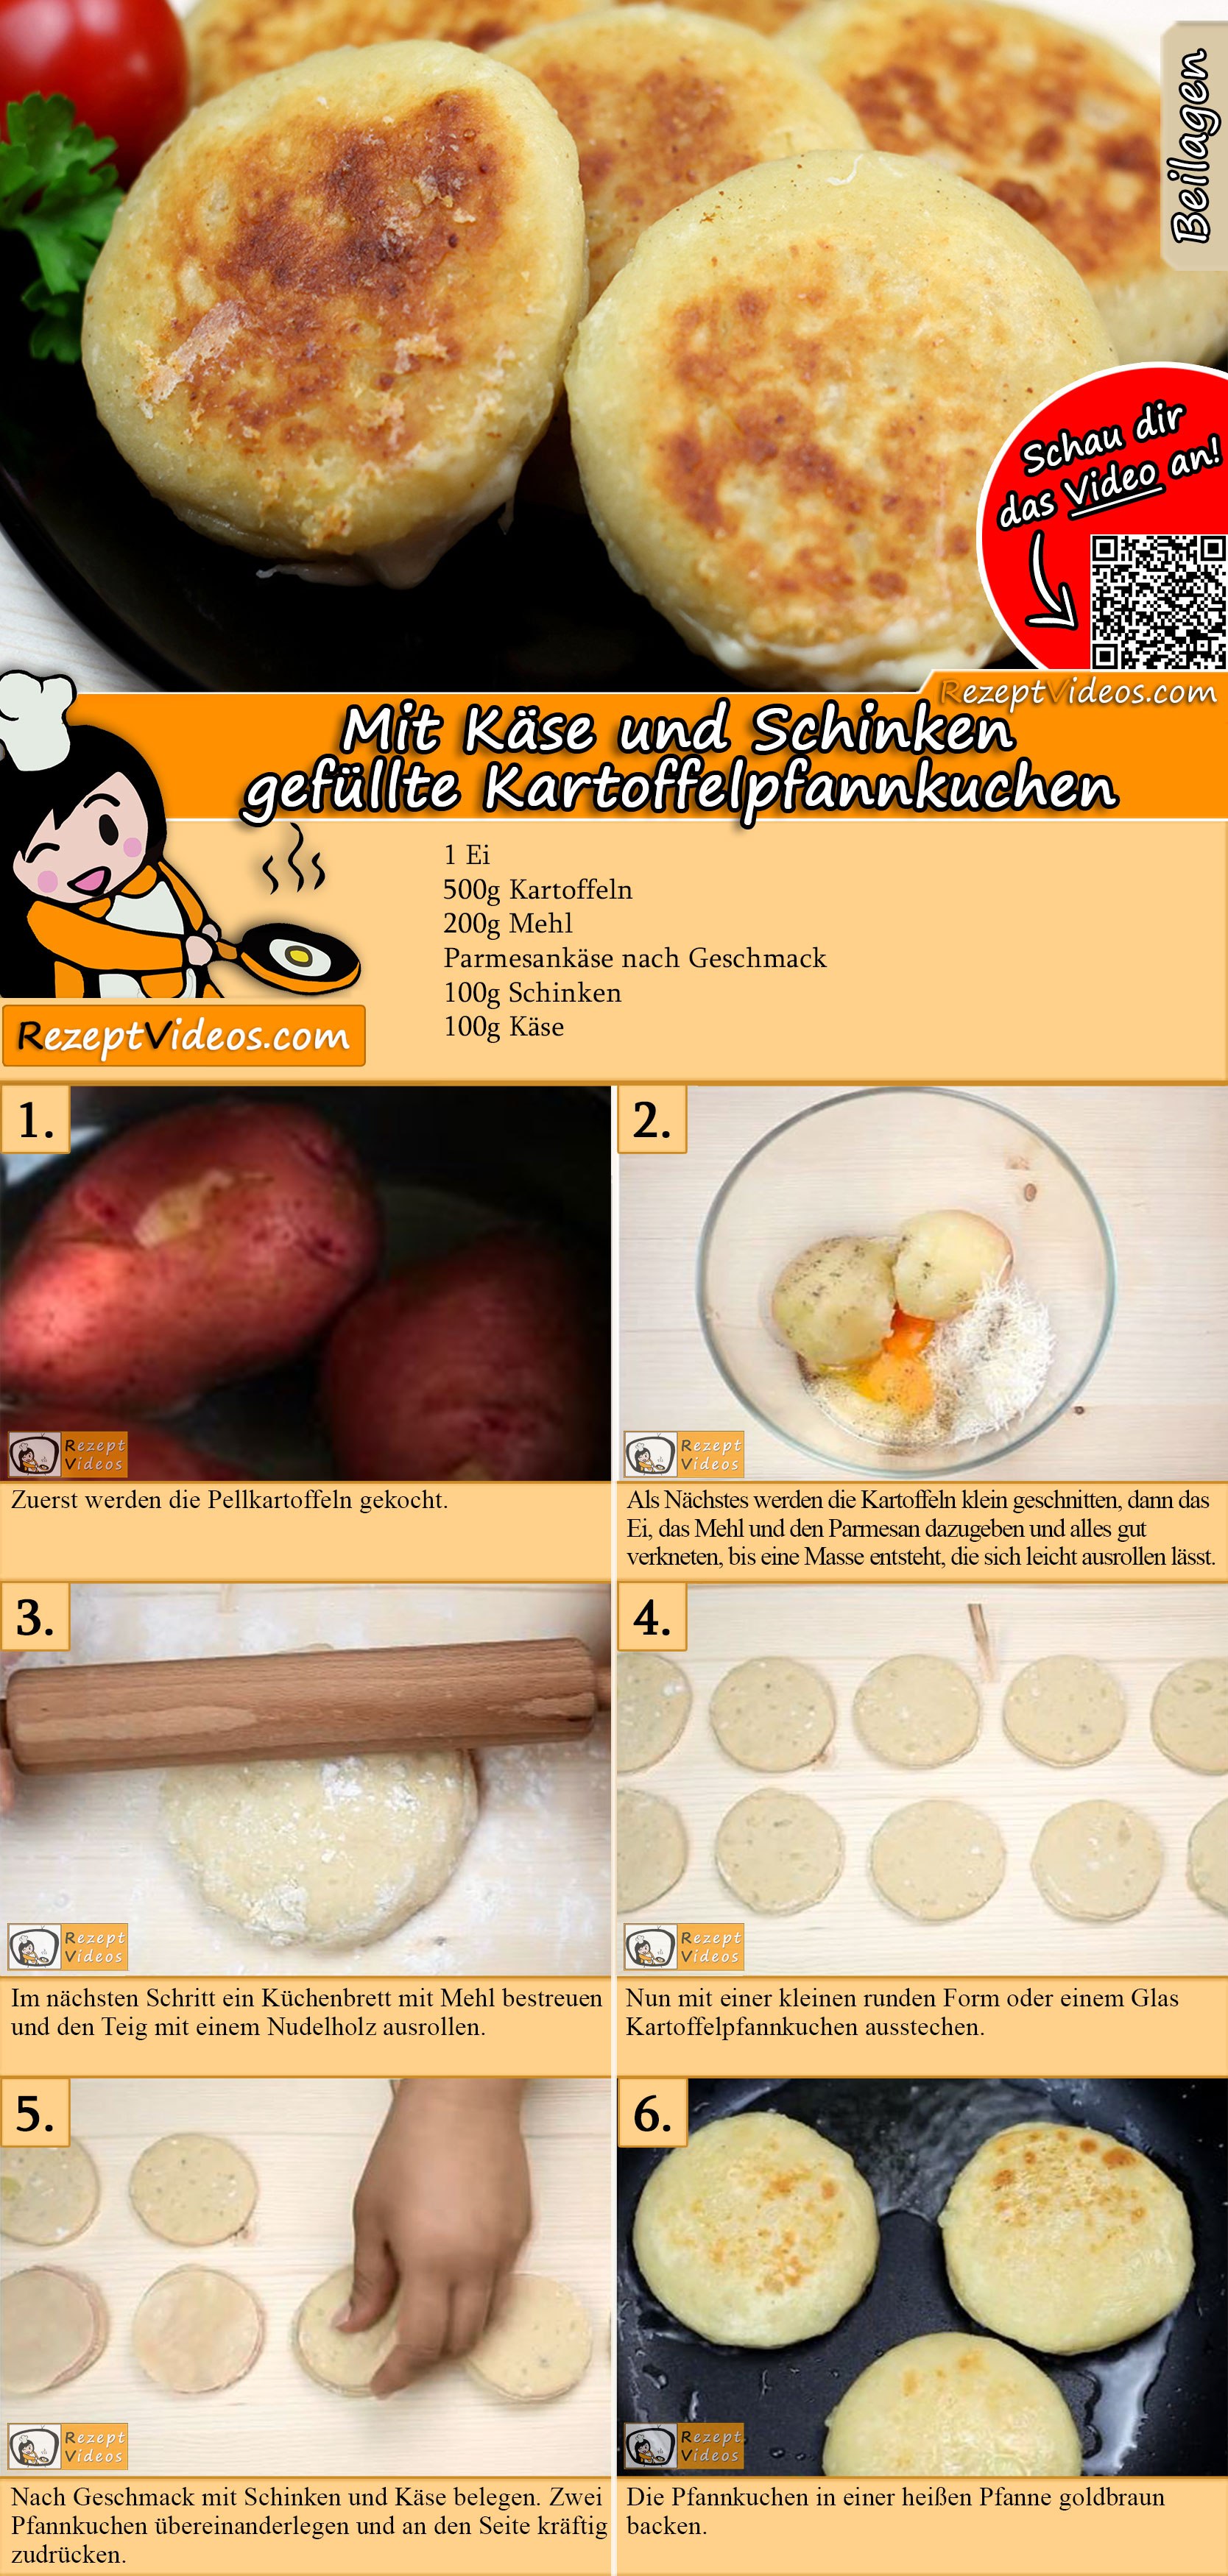 Mit Käse und Schinken gefüllte Kartoffelpfannkuchen Rezept mit Video